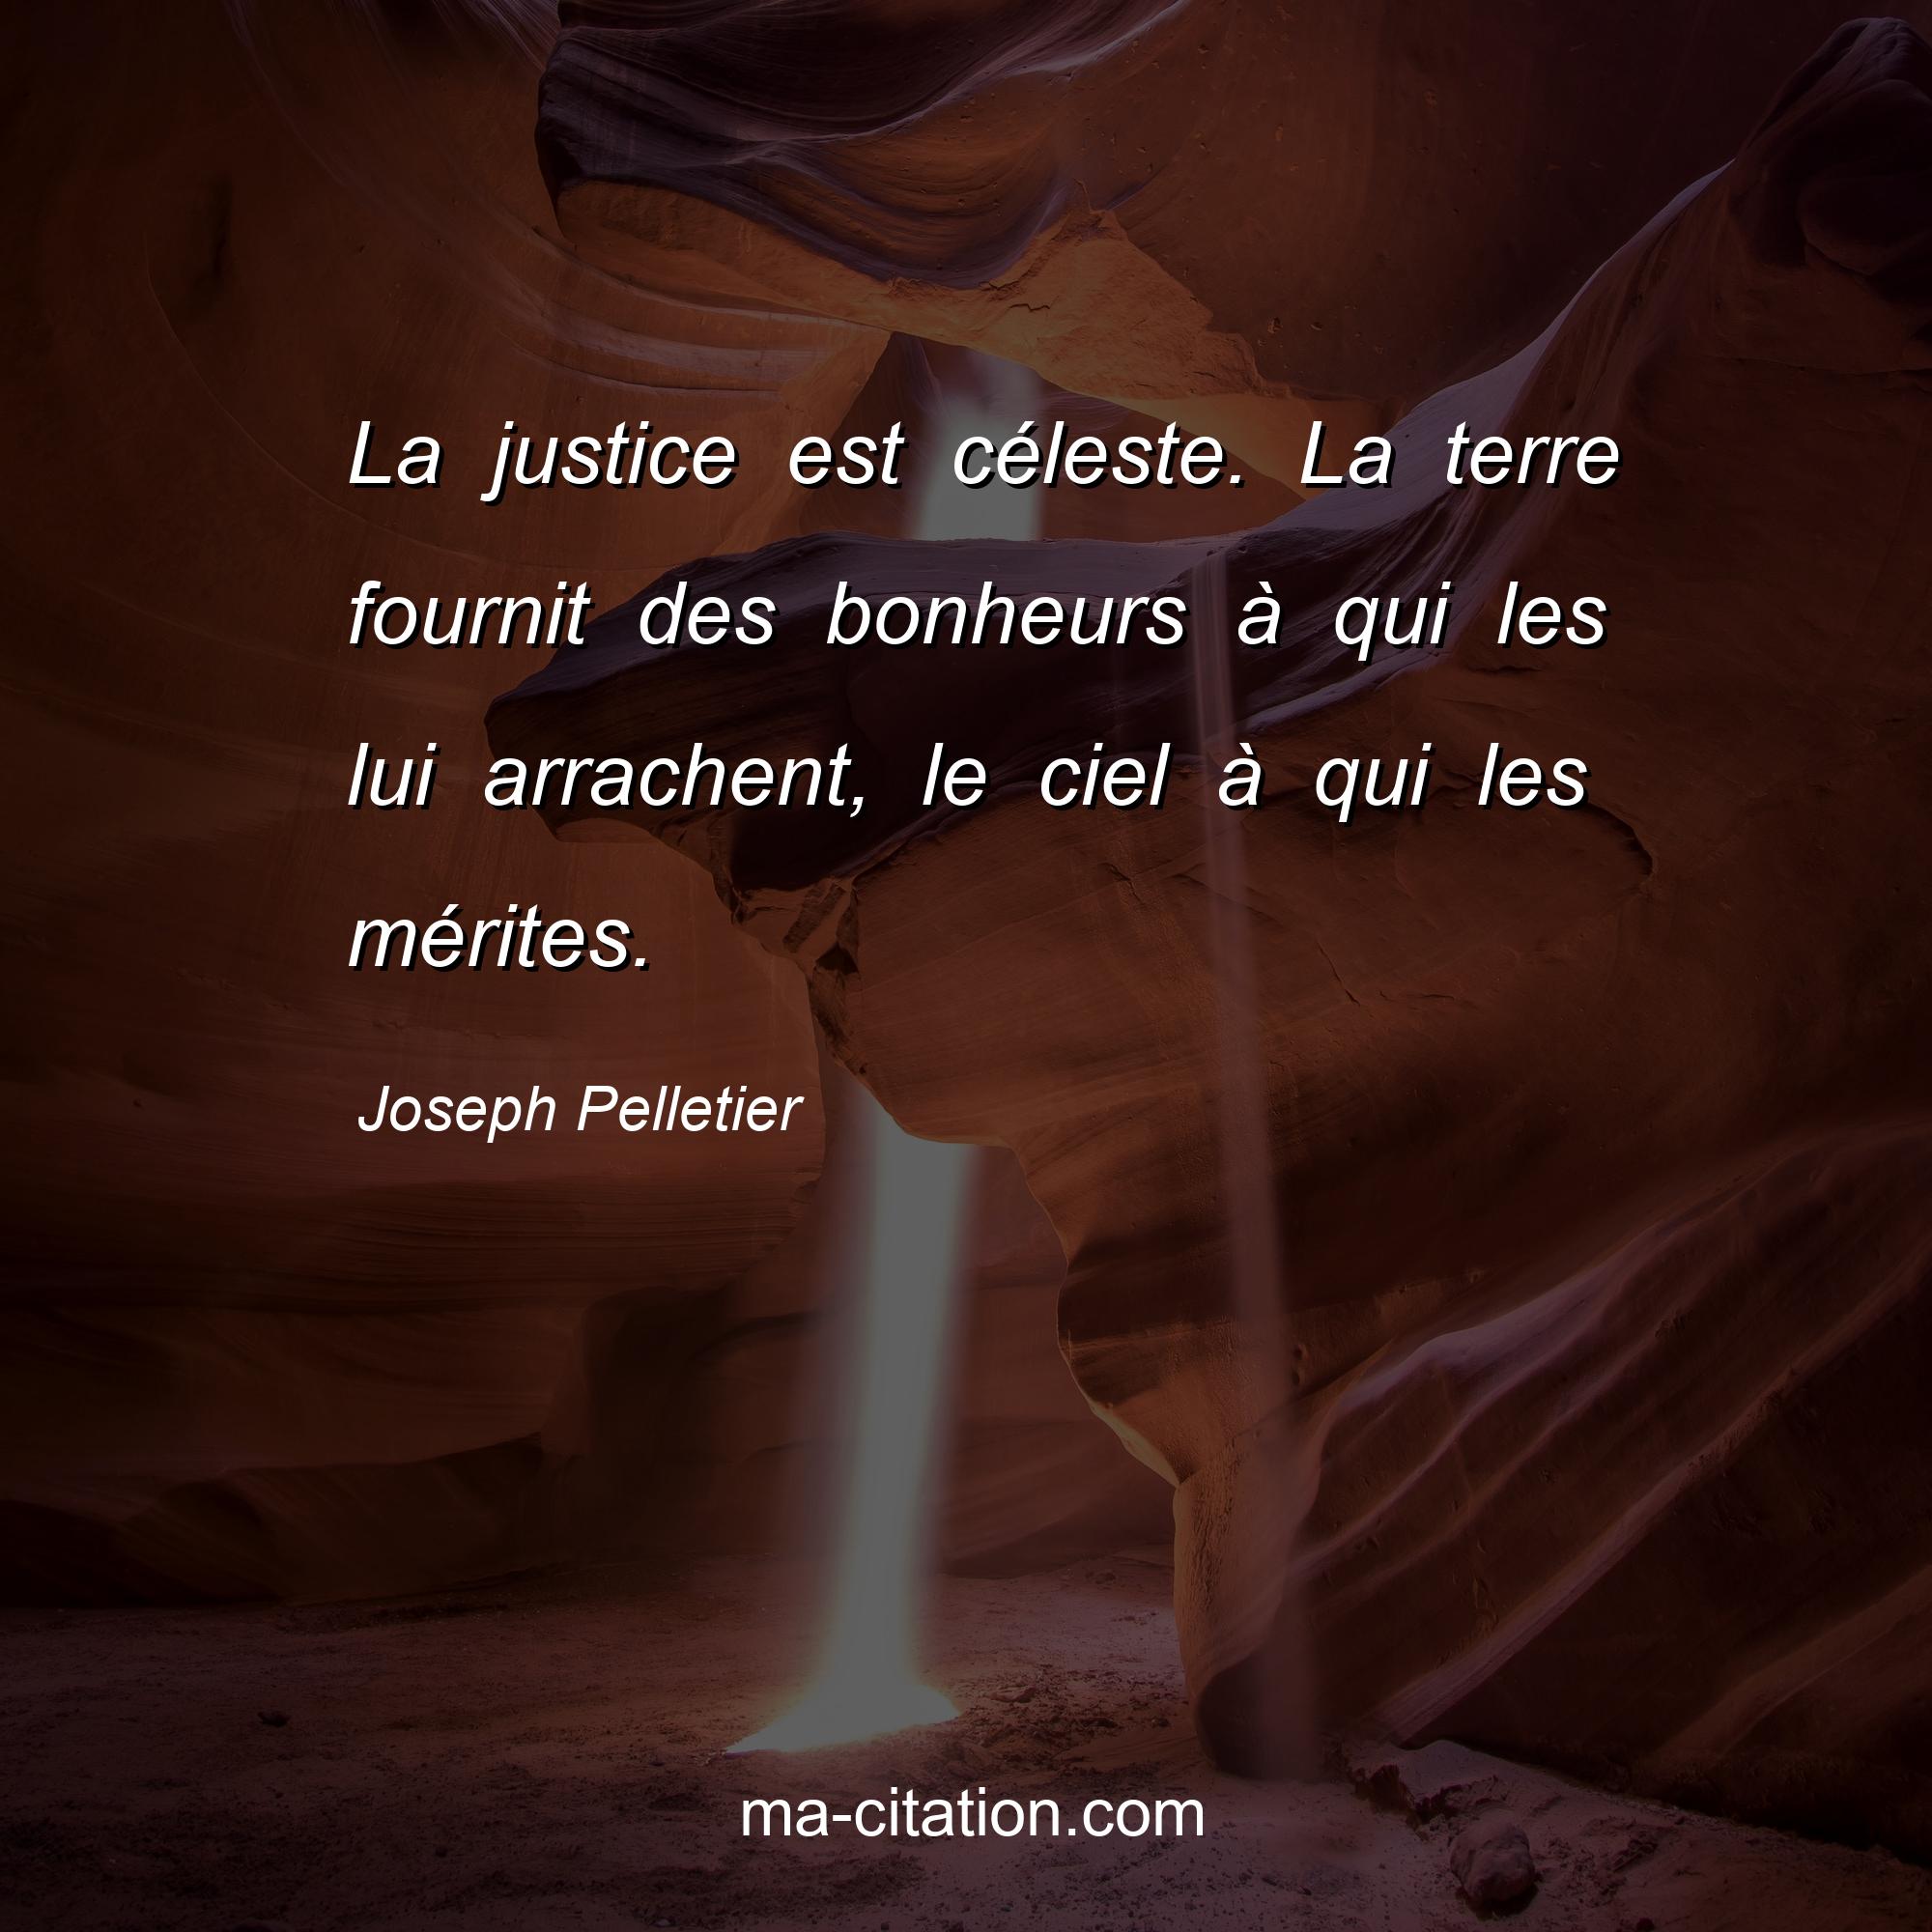 Joseph Pelletier : La justice est céleste. La terre fournit des bonheurs à qui les lui arrachent, le ciel à qui les mérites.